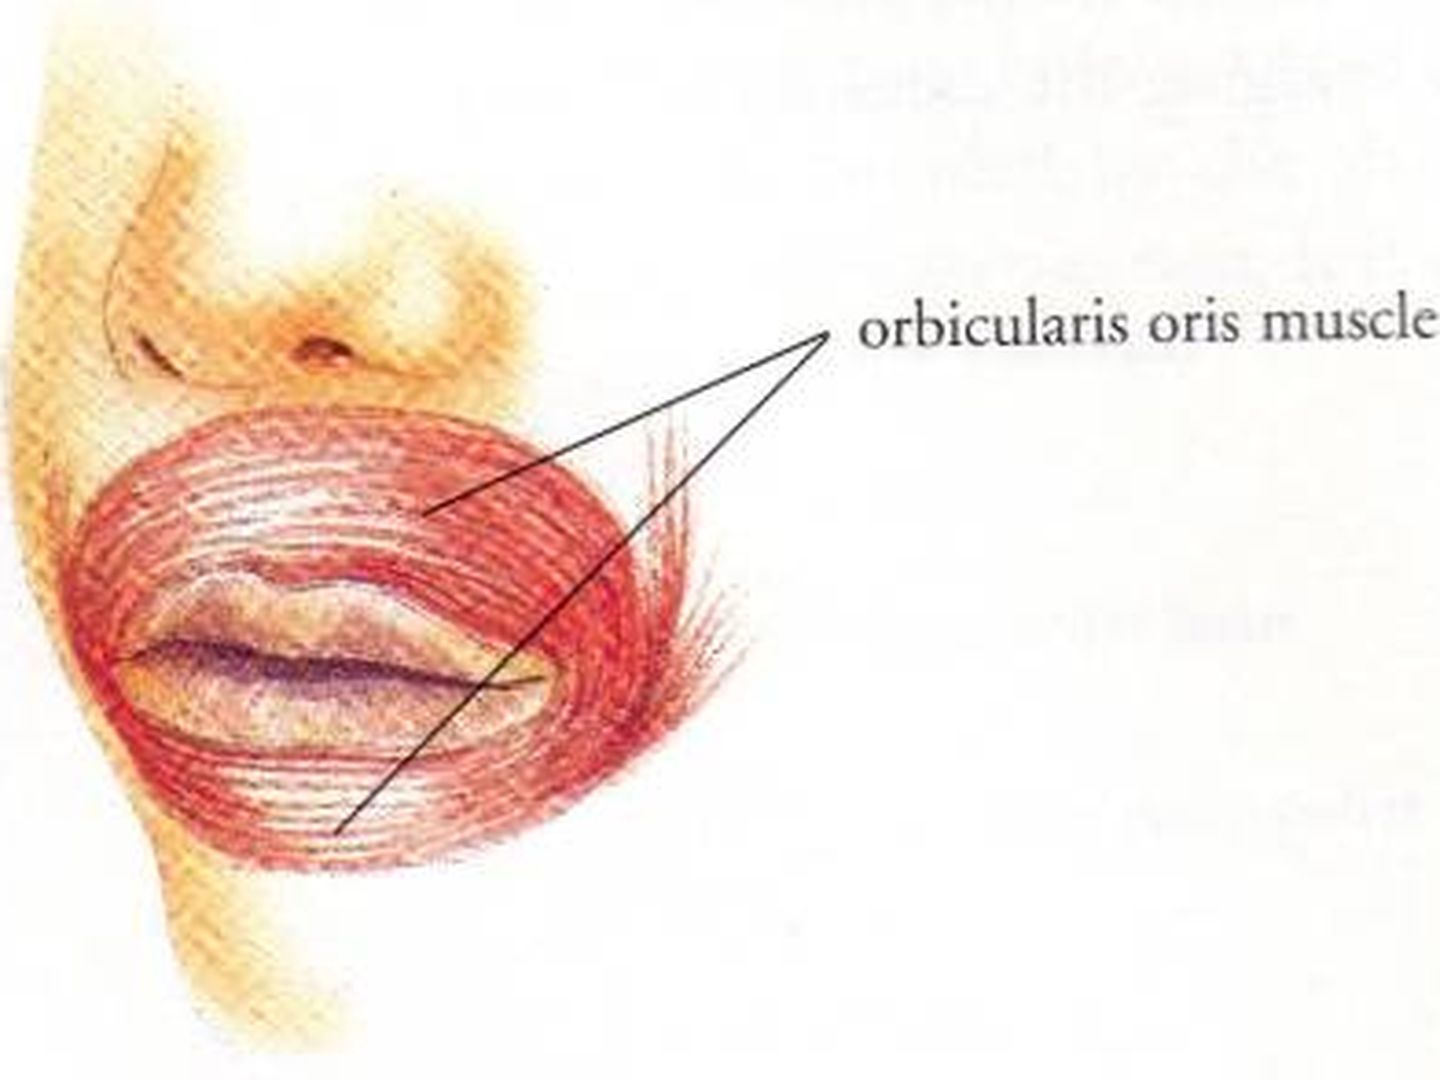 Músculo orbicularis oris